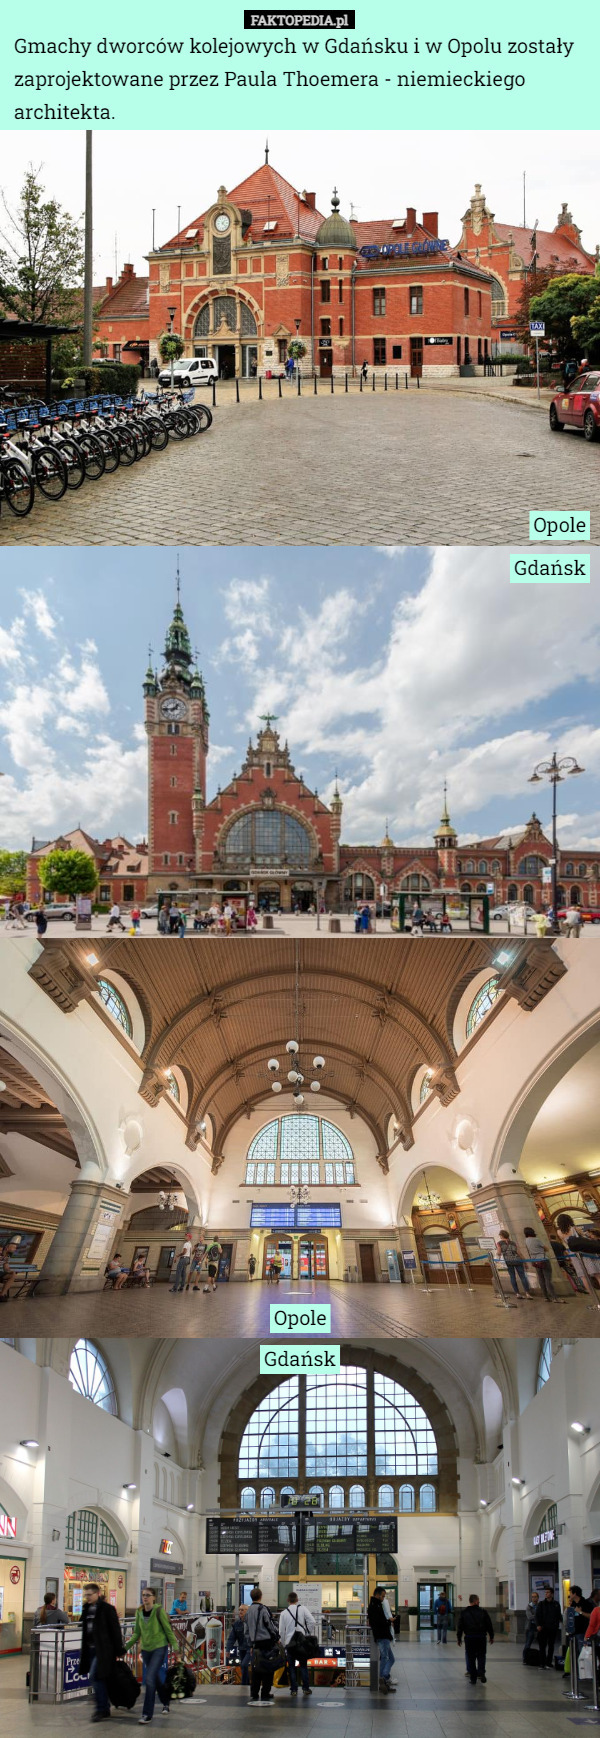 Gmachy dworców kolejowych w Gdańsku i w Opolu zostały zaprojektowane przez Paula Thoemera - niemieckiego architekta. Opole Gdańsk Opole Gdańsk 